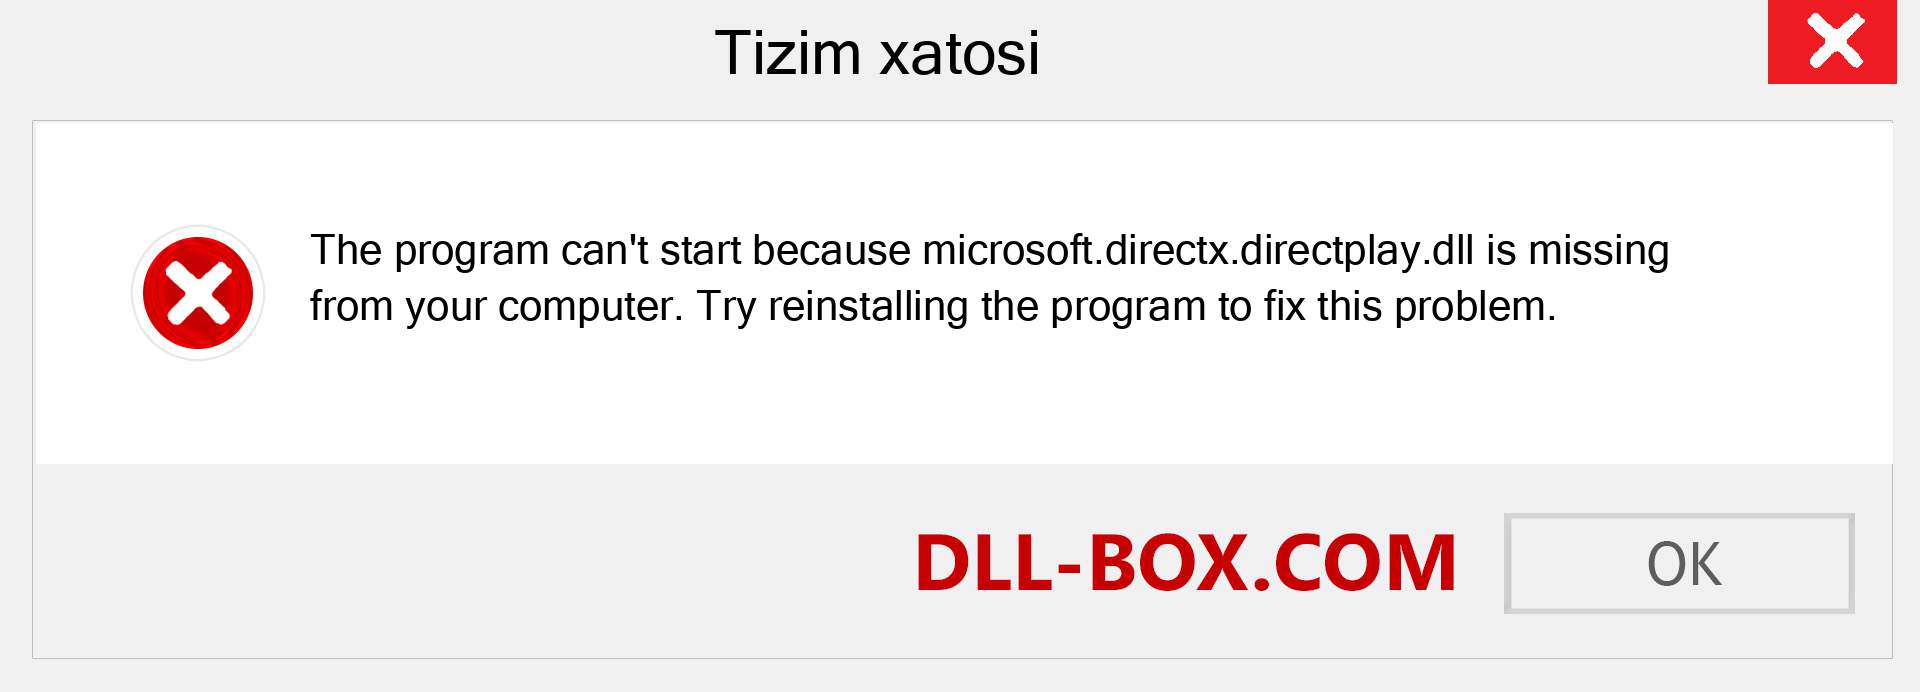 microsoft.directx.directplay.dll fayli yo'qolganmi?. Windows 7, 8, 10 uchun yuklab olish - Windowsda microsoft.directx.directplay dll etishmayotgan xatoni tuzating, rasmlar, rasmlar